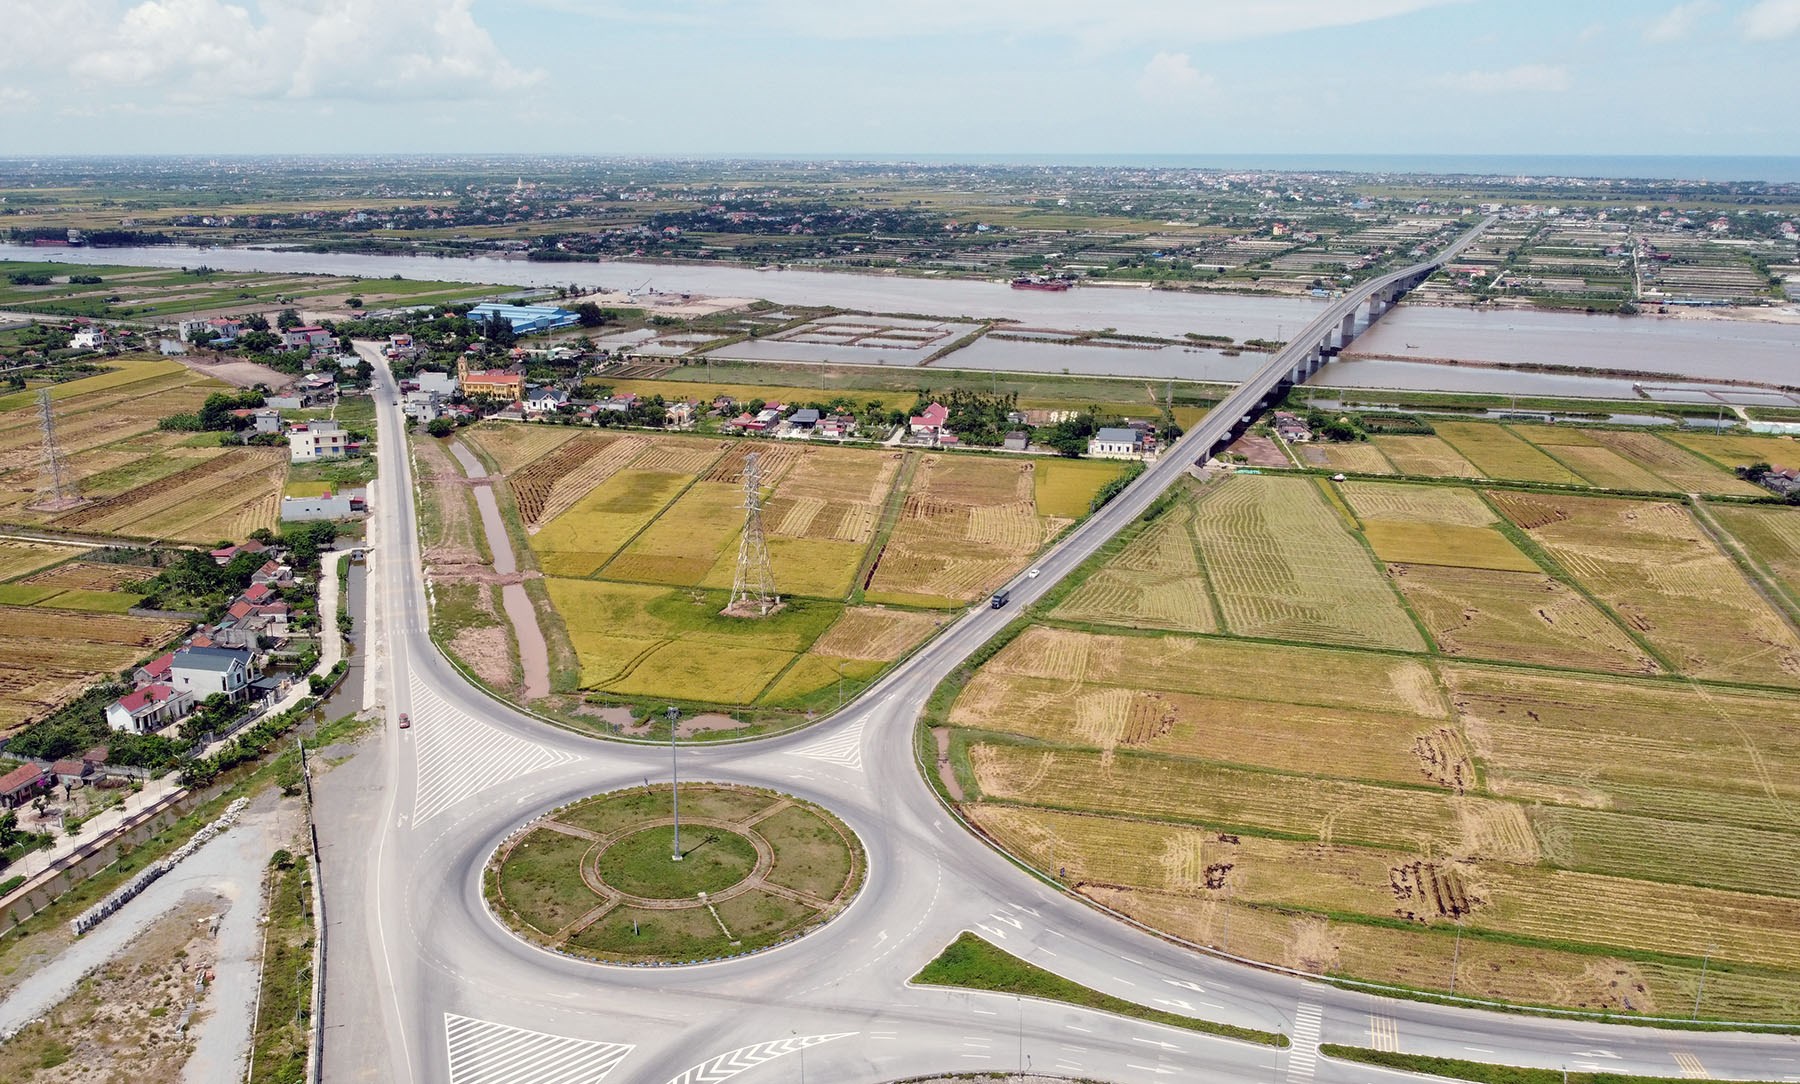 Toàn cảnh đường nối vùng kinh tế biển Nam Định với cao tốc Cầu Giẽ - Ninh Bình đang xây giai đoạn 2